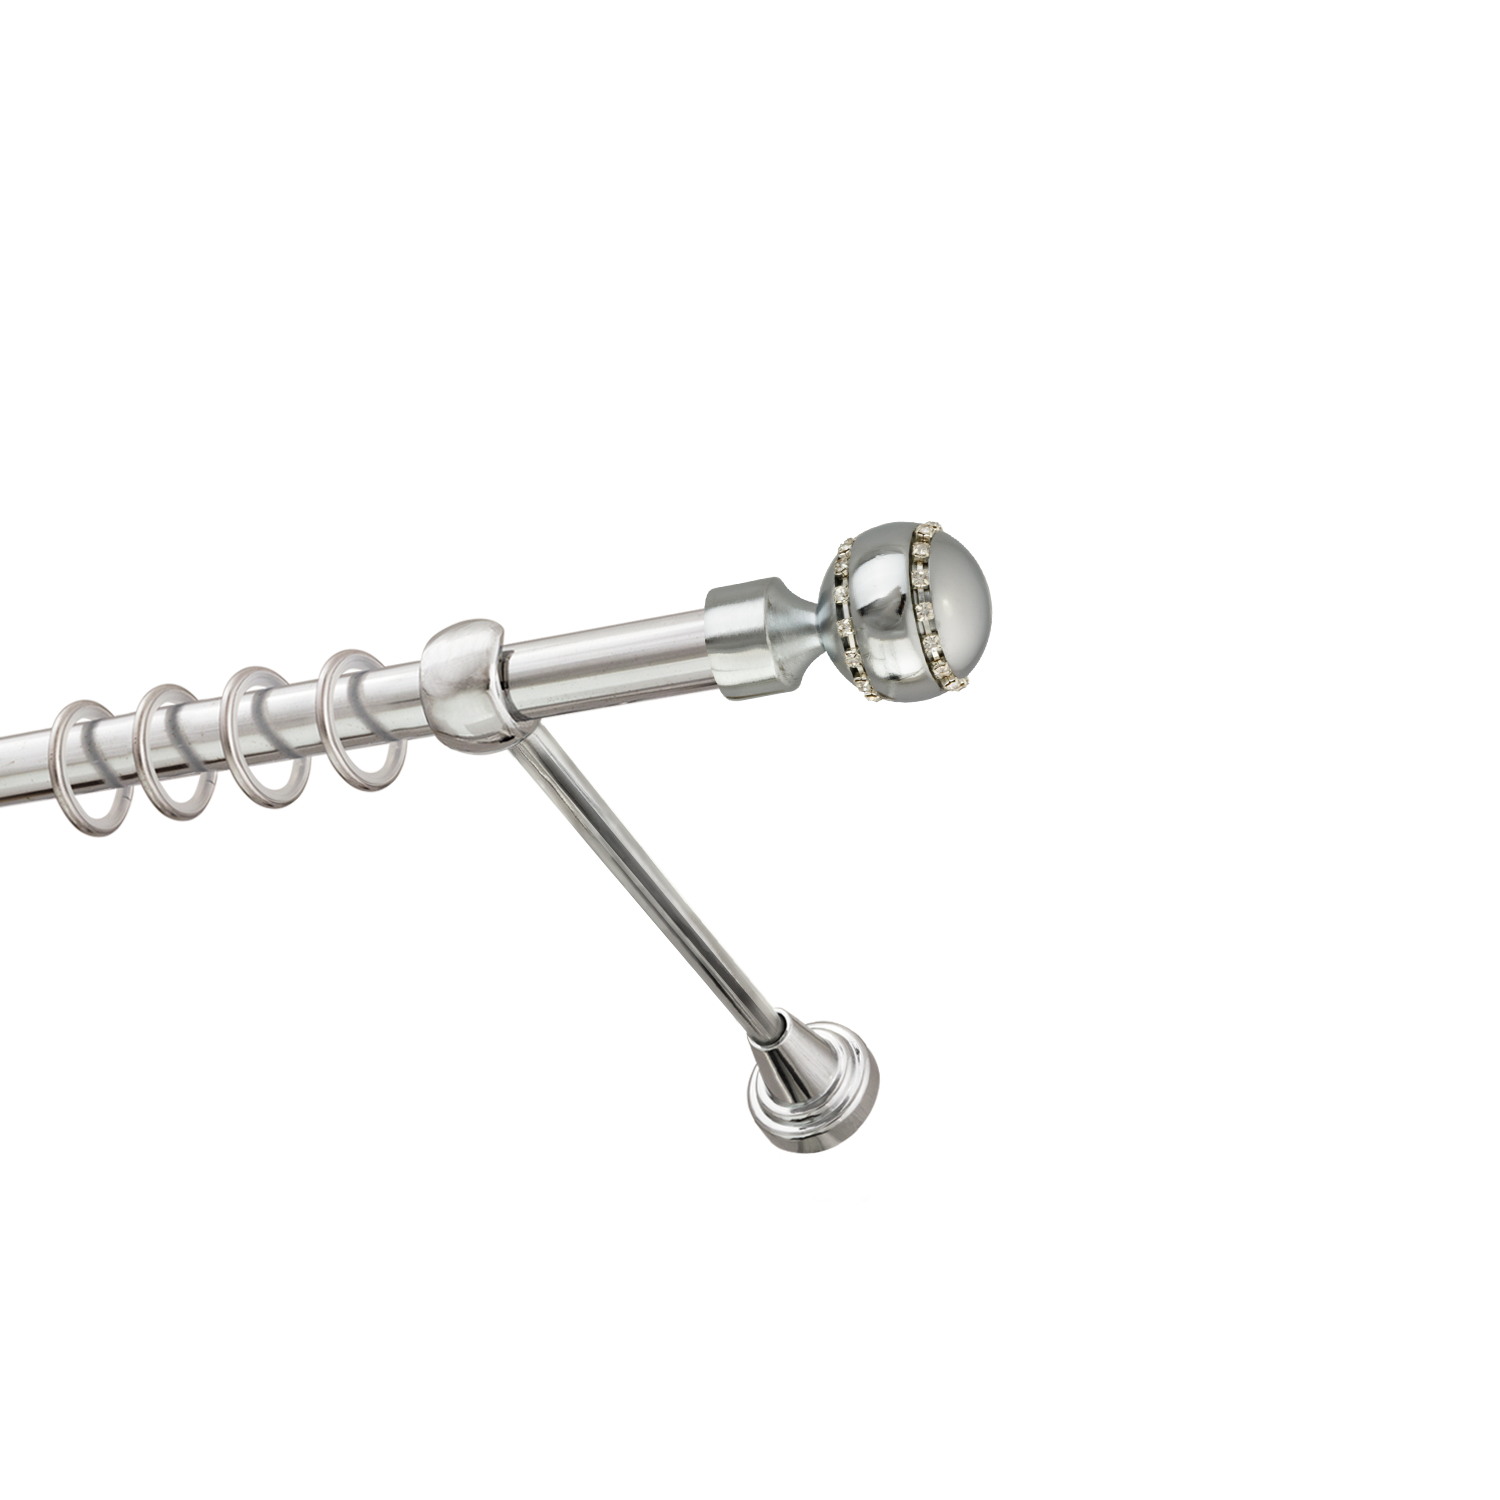 Металлический карниз для штор Модерн, однорядный 16 мм, серебро, гладкая штанга, длина 180 см - фото Wikidecor.ru